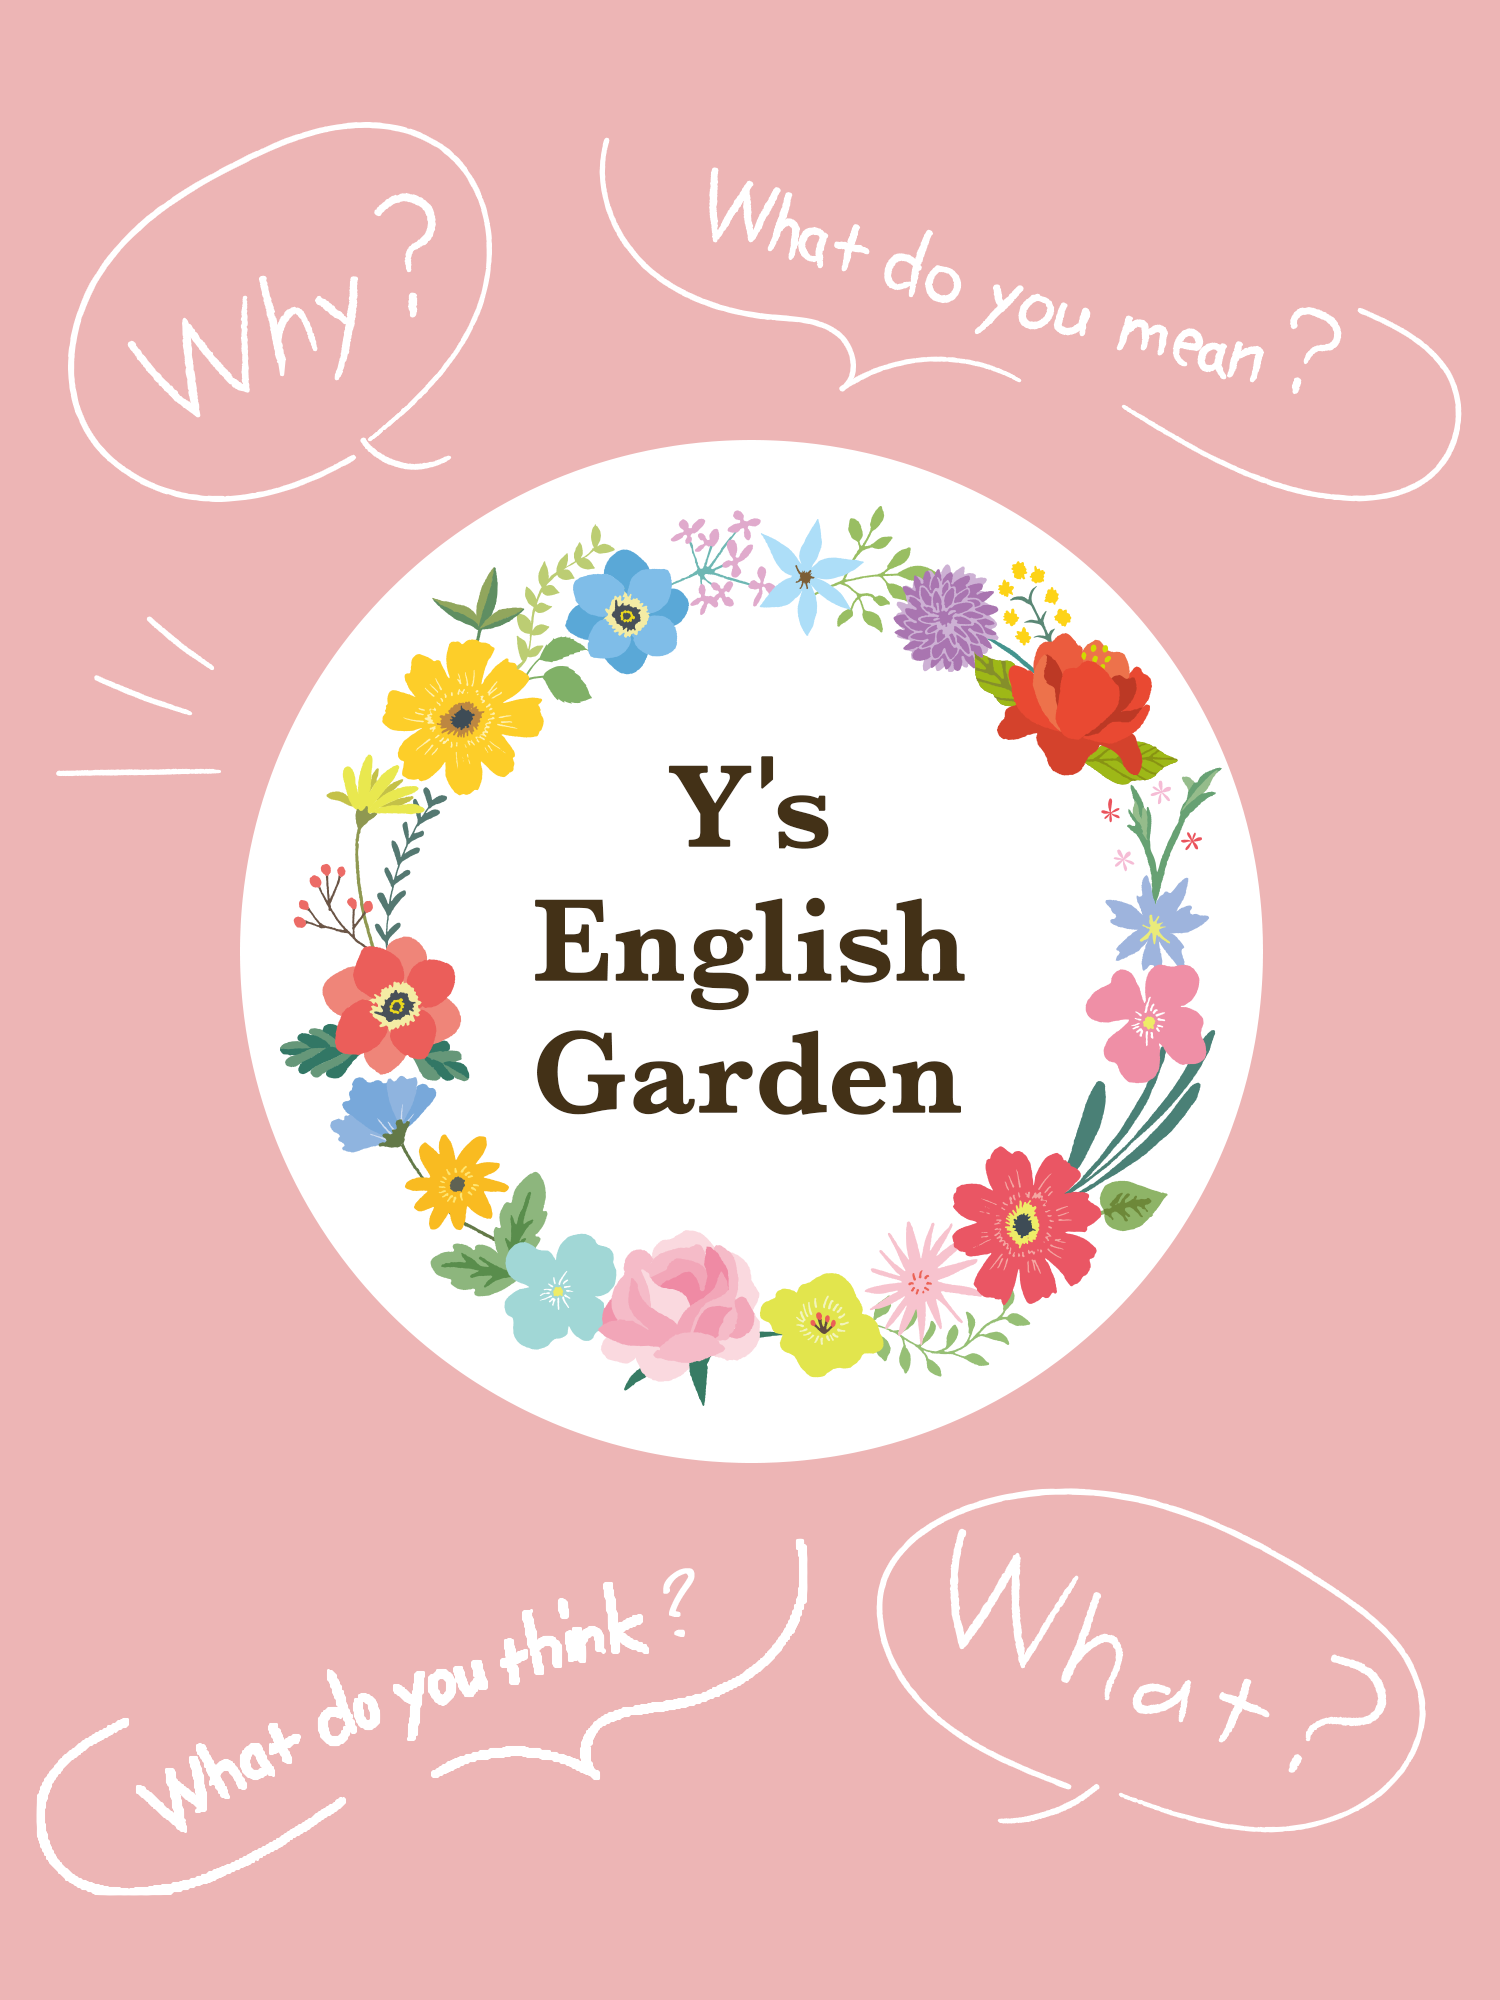 Y's English Gardenとは?何故?どういう意味?